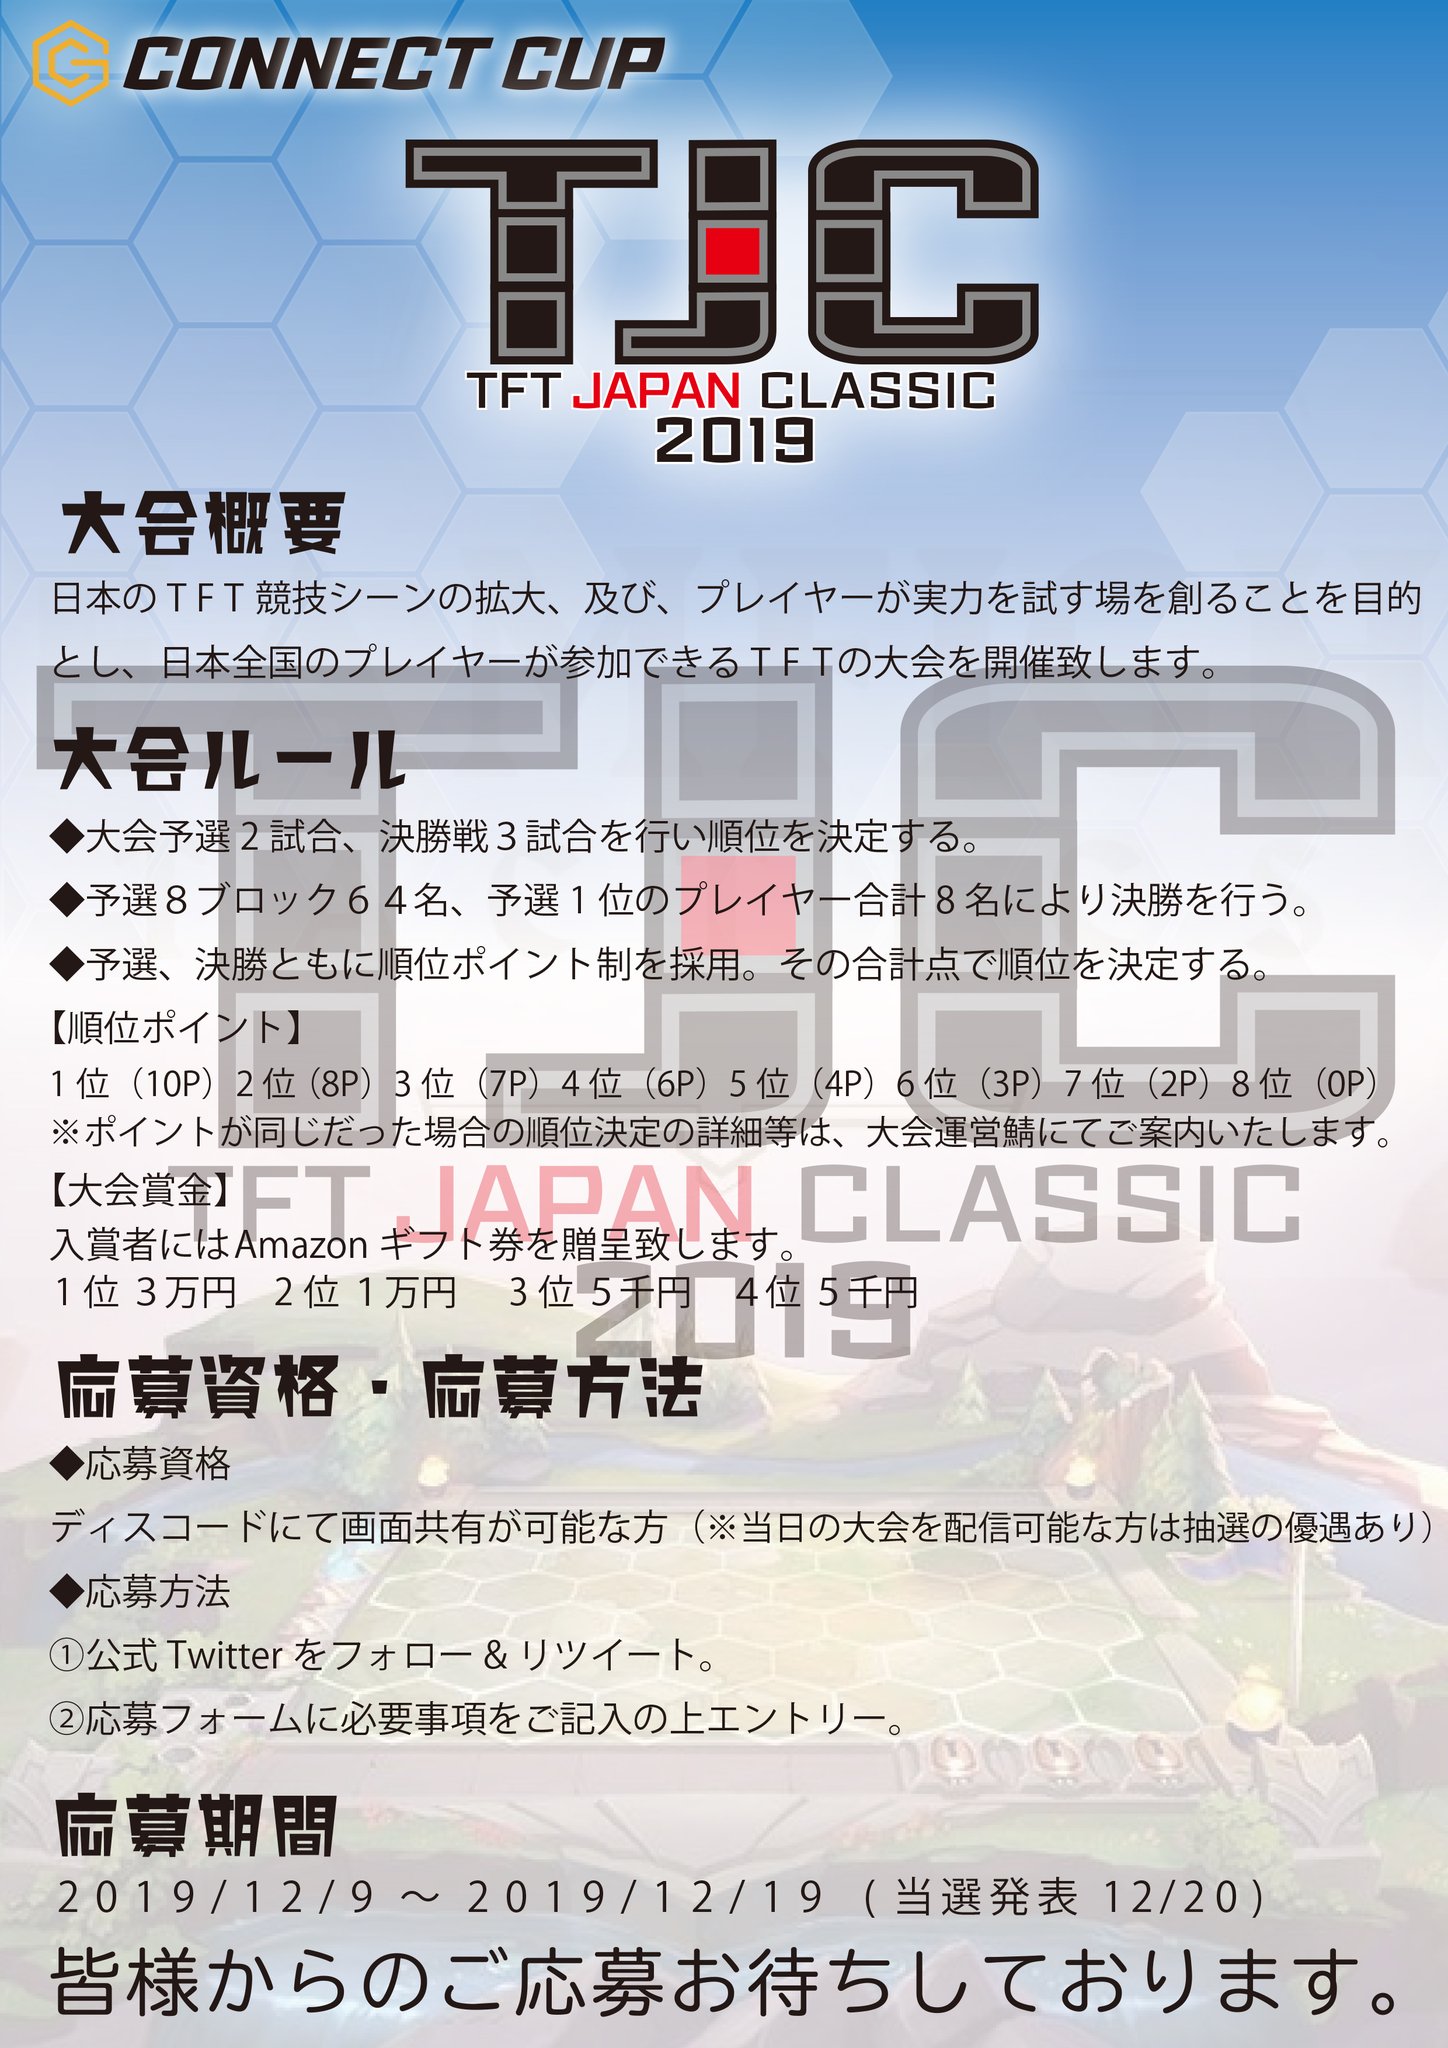 Connectgaming Connect Cup Tft Japan Classic 19 12月21日に開催決定 招待選手を含む国内プレイヤー６４名によるtftの大会を開催致します 詳細をご確認の上 下記のエントリーフォームよりご応募ください T Co Noksmirww7 応募締切